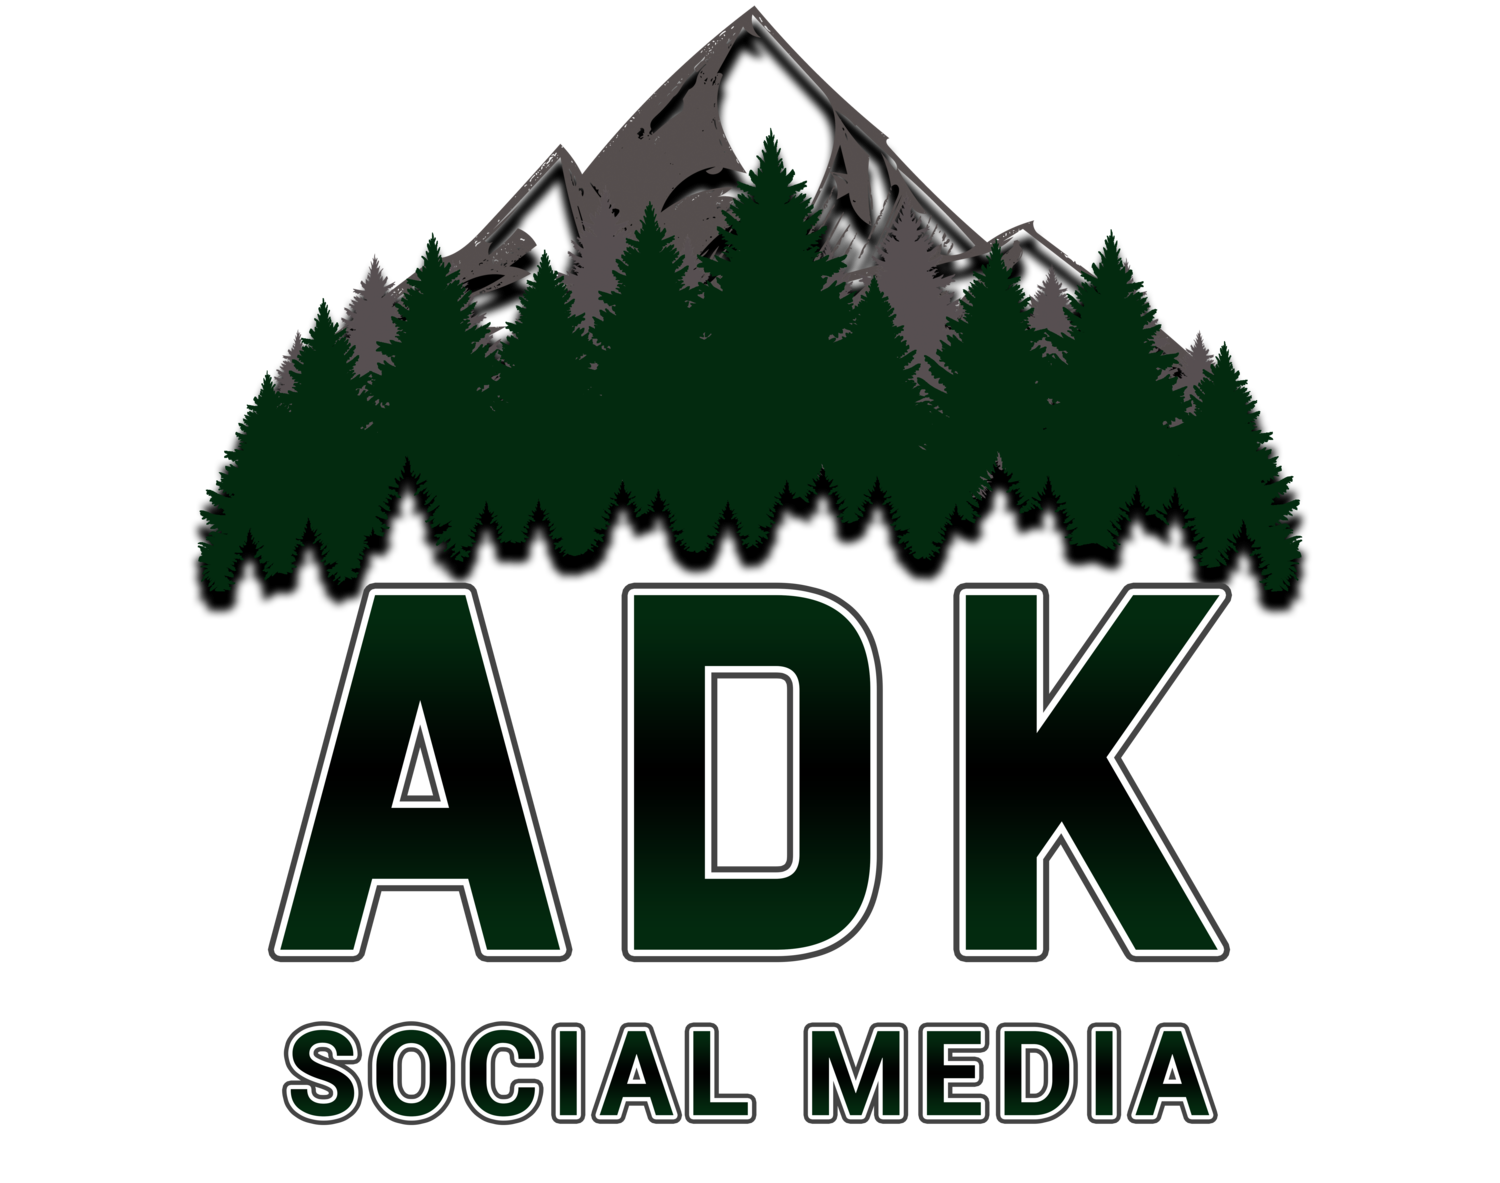 Adirondack Social Media: Digital Marketing Agency in Albany, NY